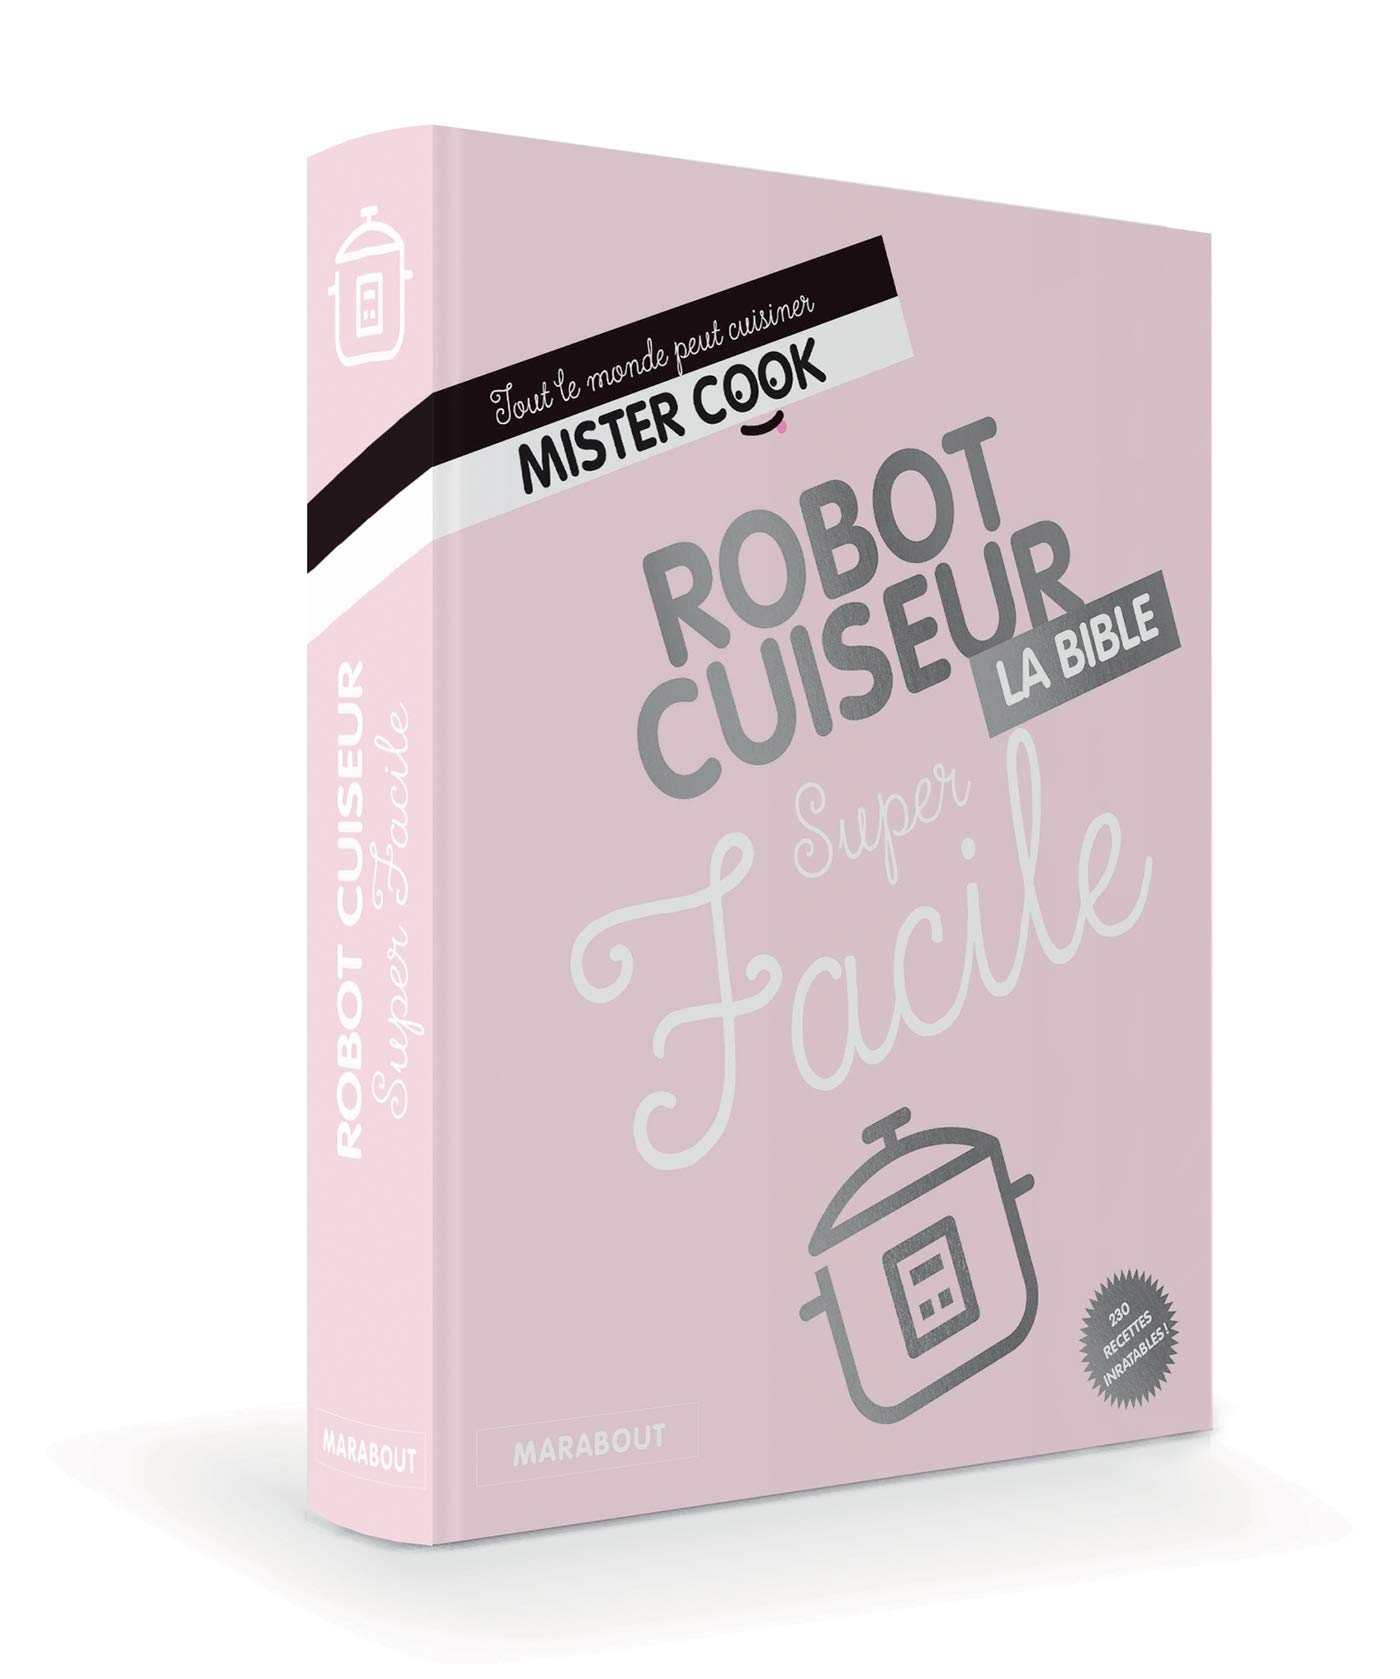 robot_cuiseur_bible